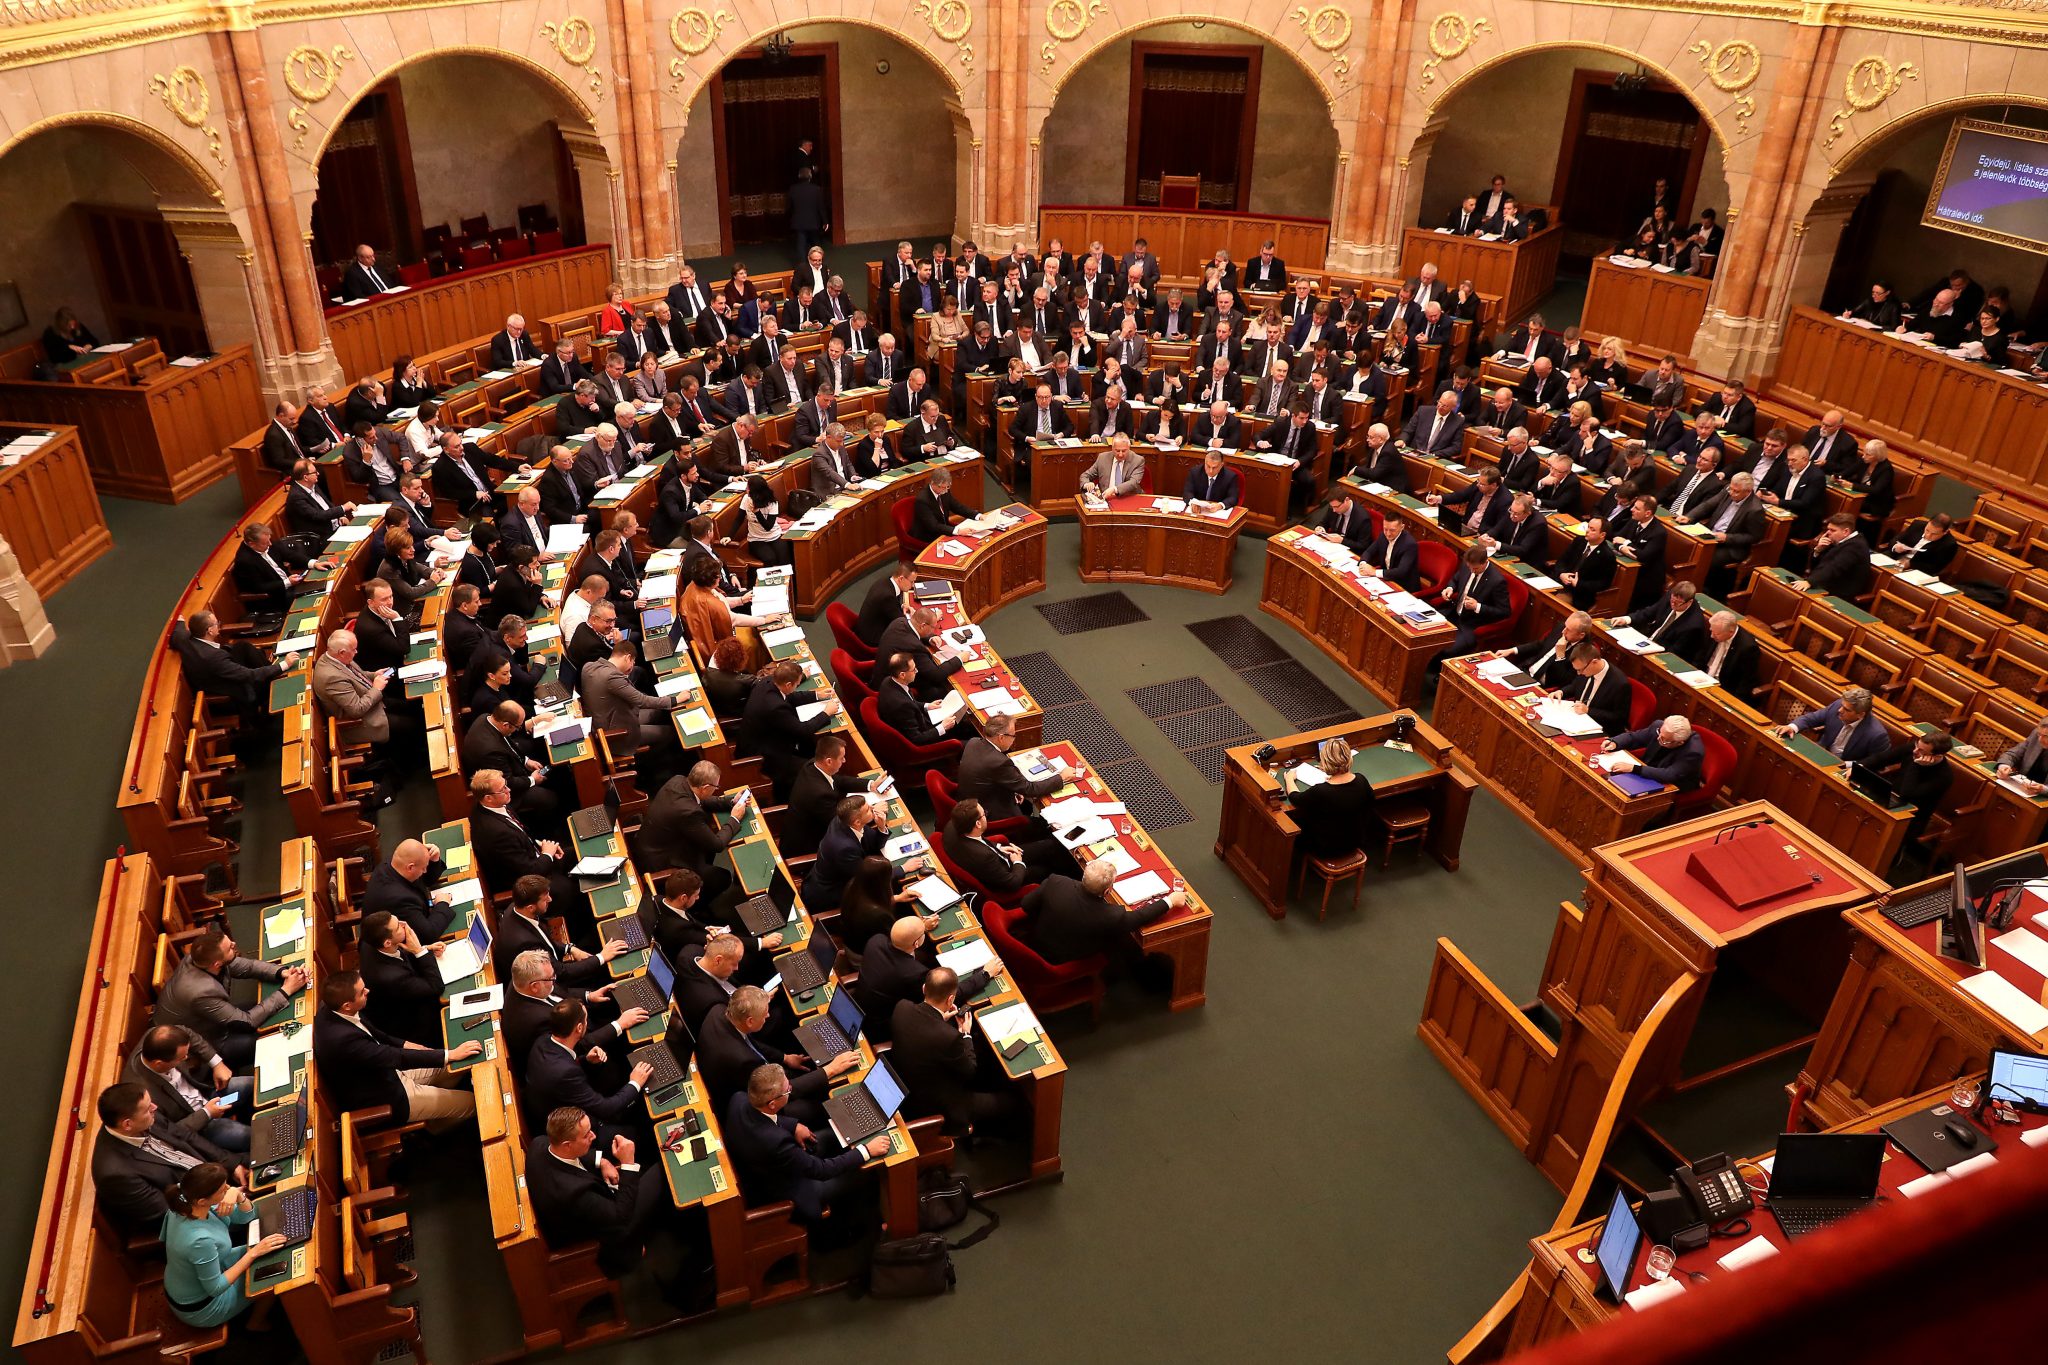 BUDAPOST: Regierung plant erneute Verfassungsänderung